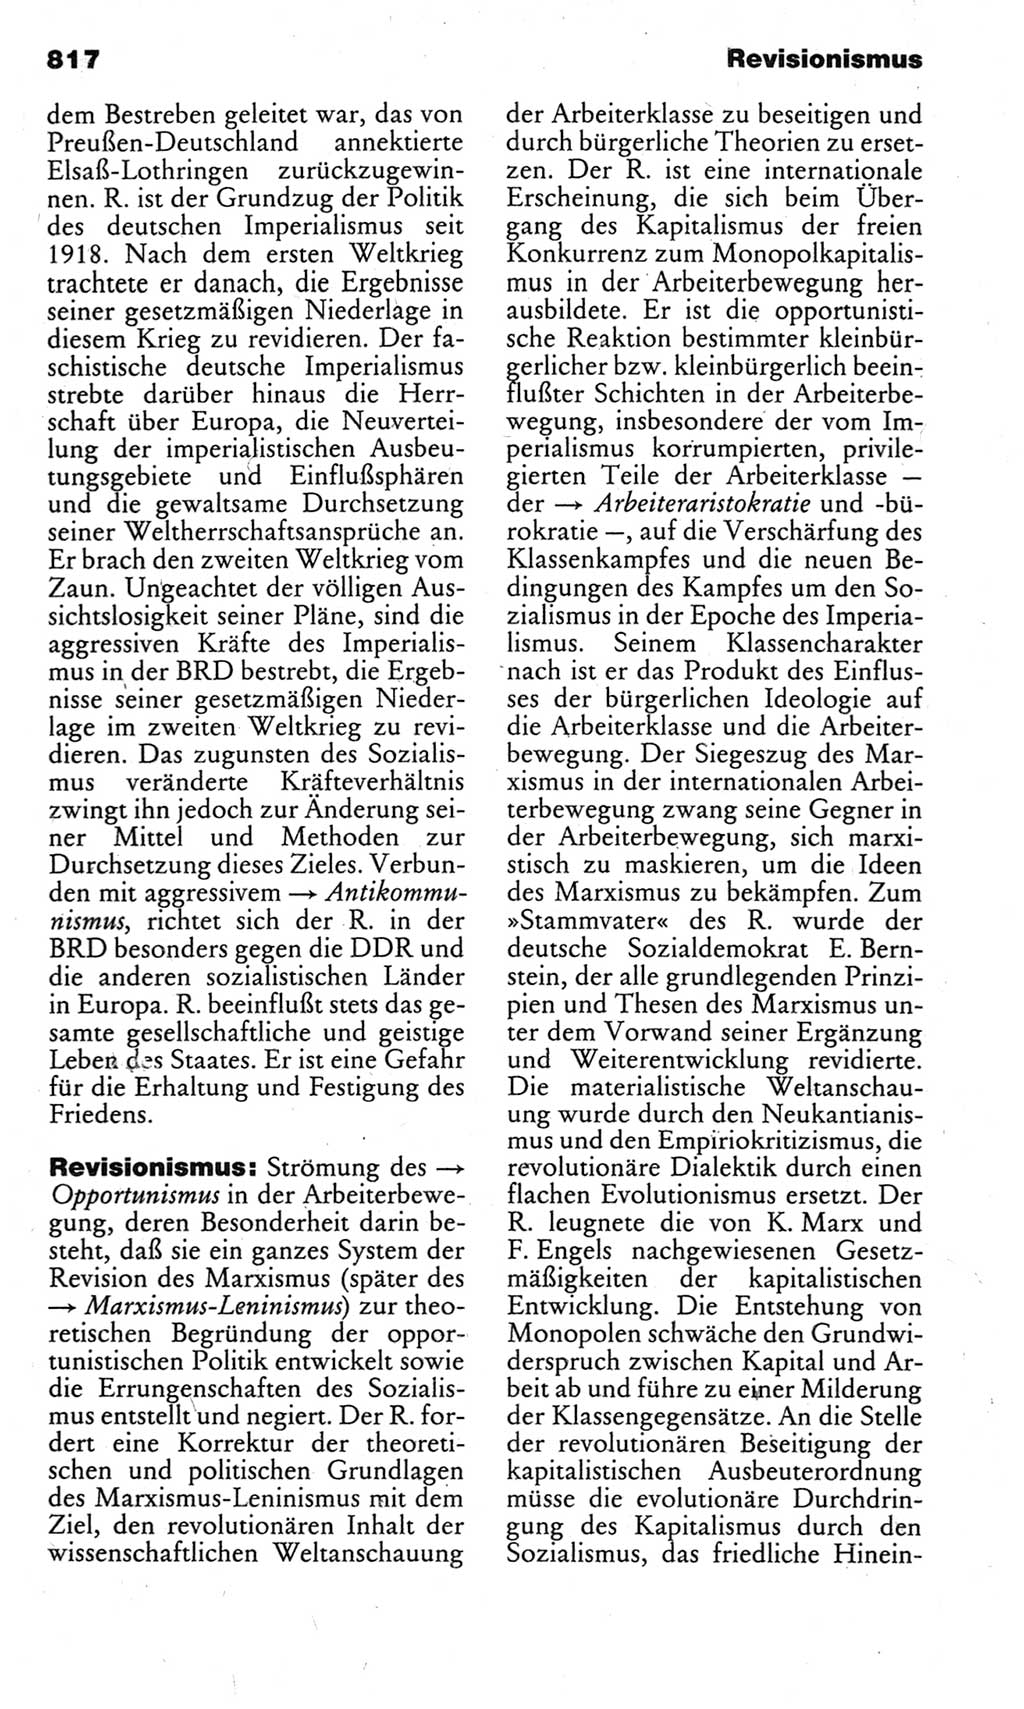 Kleines politisches Wörterbuch [Deutsche Demokratische Republik (DDR)] 1983, Seite 817 (Kl. pol. Wb. DDR 1983, S. 817)